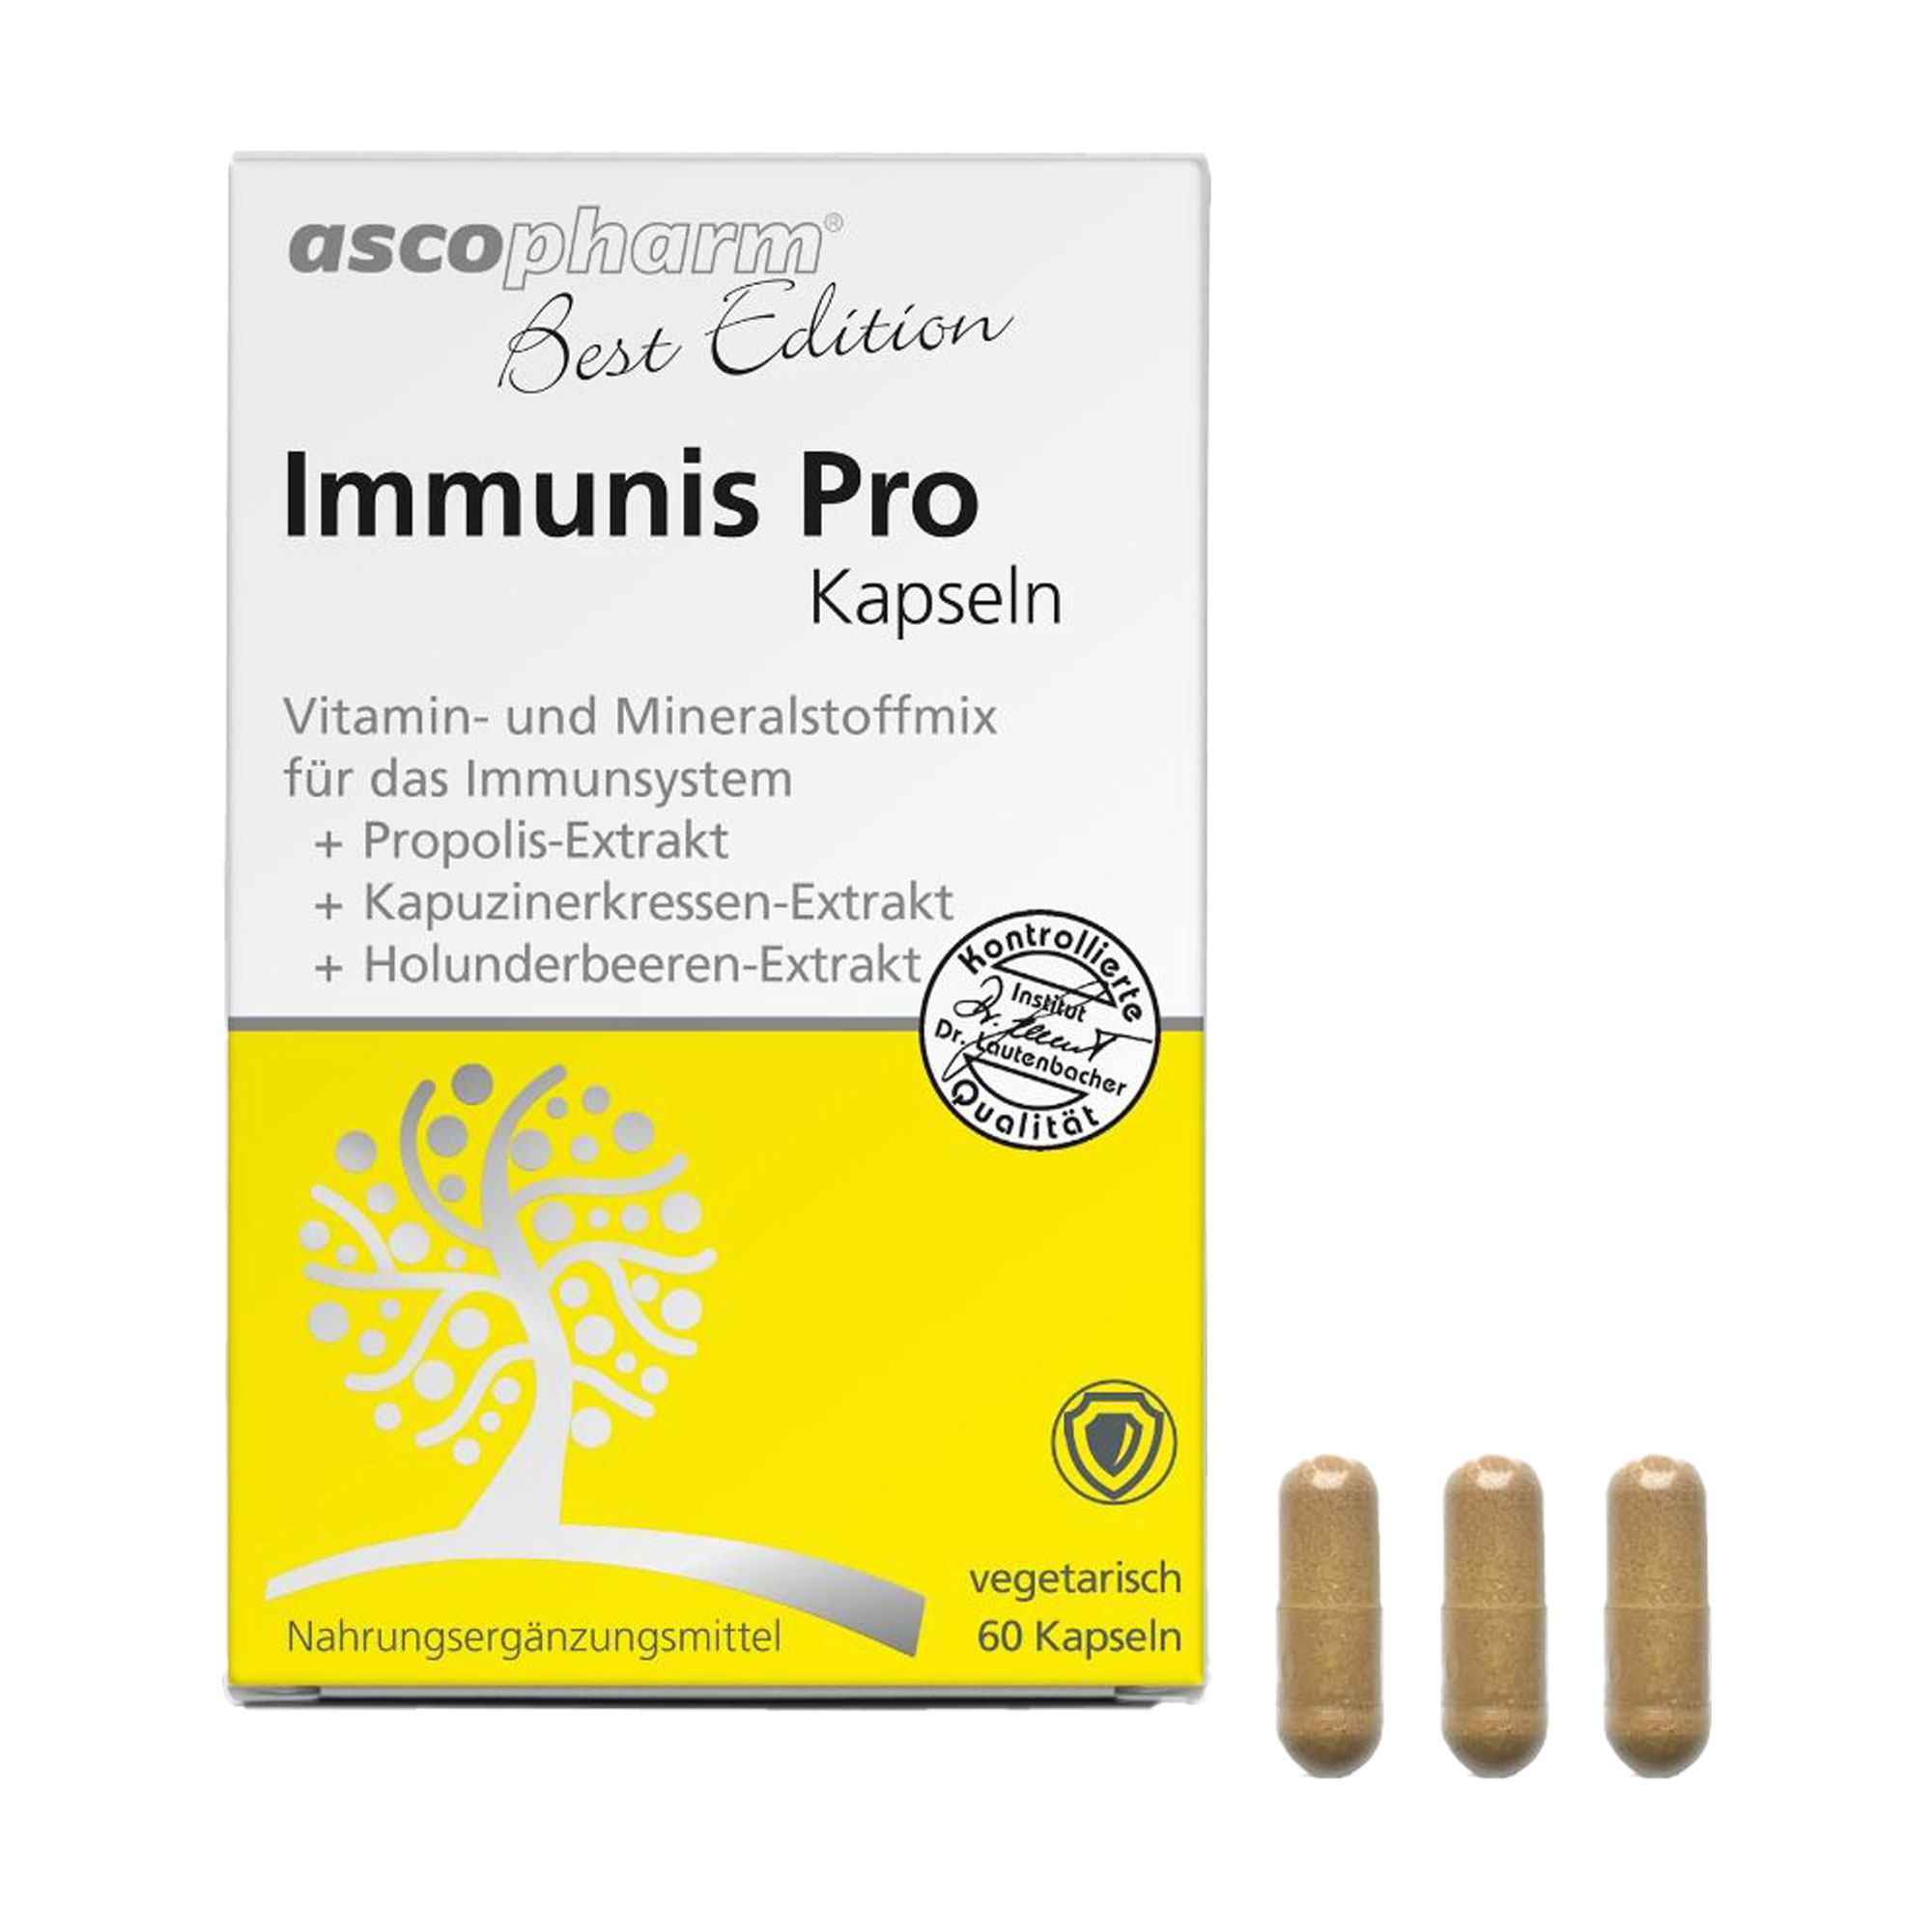 Nahrungsergänzungsmittel mit einem Vitamin- und Mineralstoffmix. Zur Unterstützung des Immunsystems.